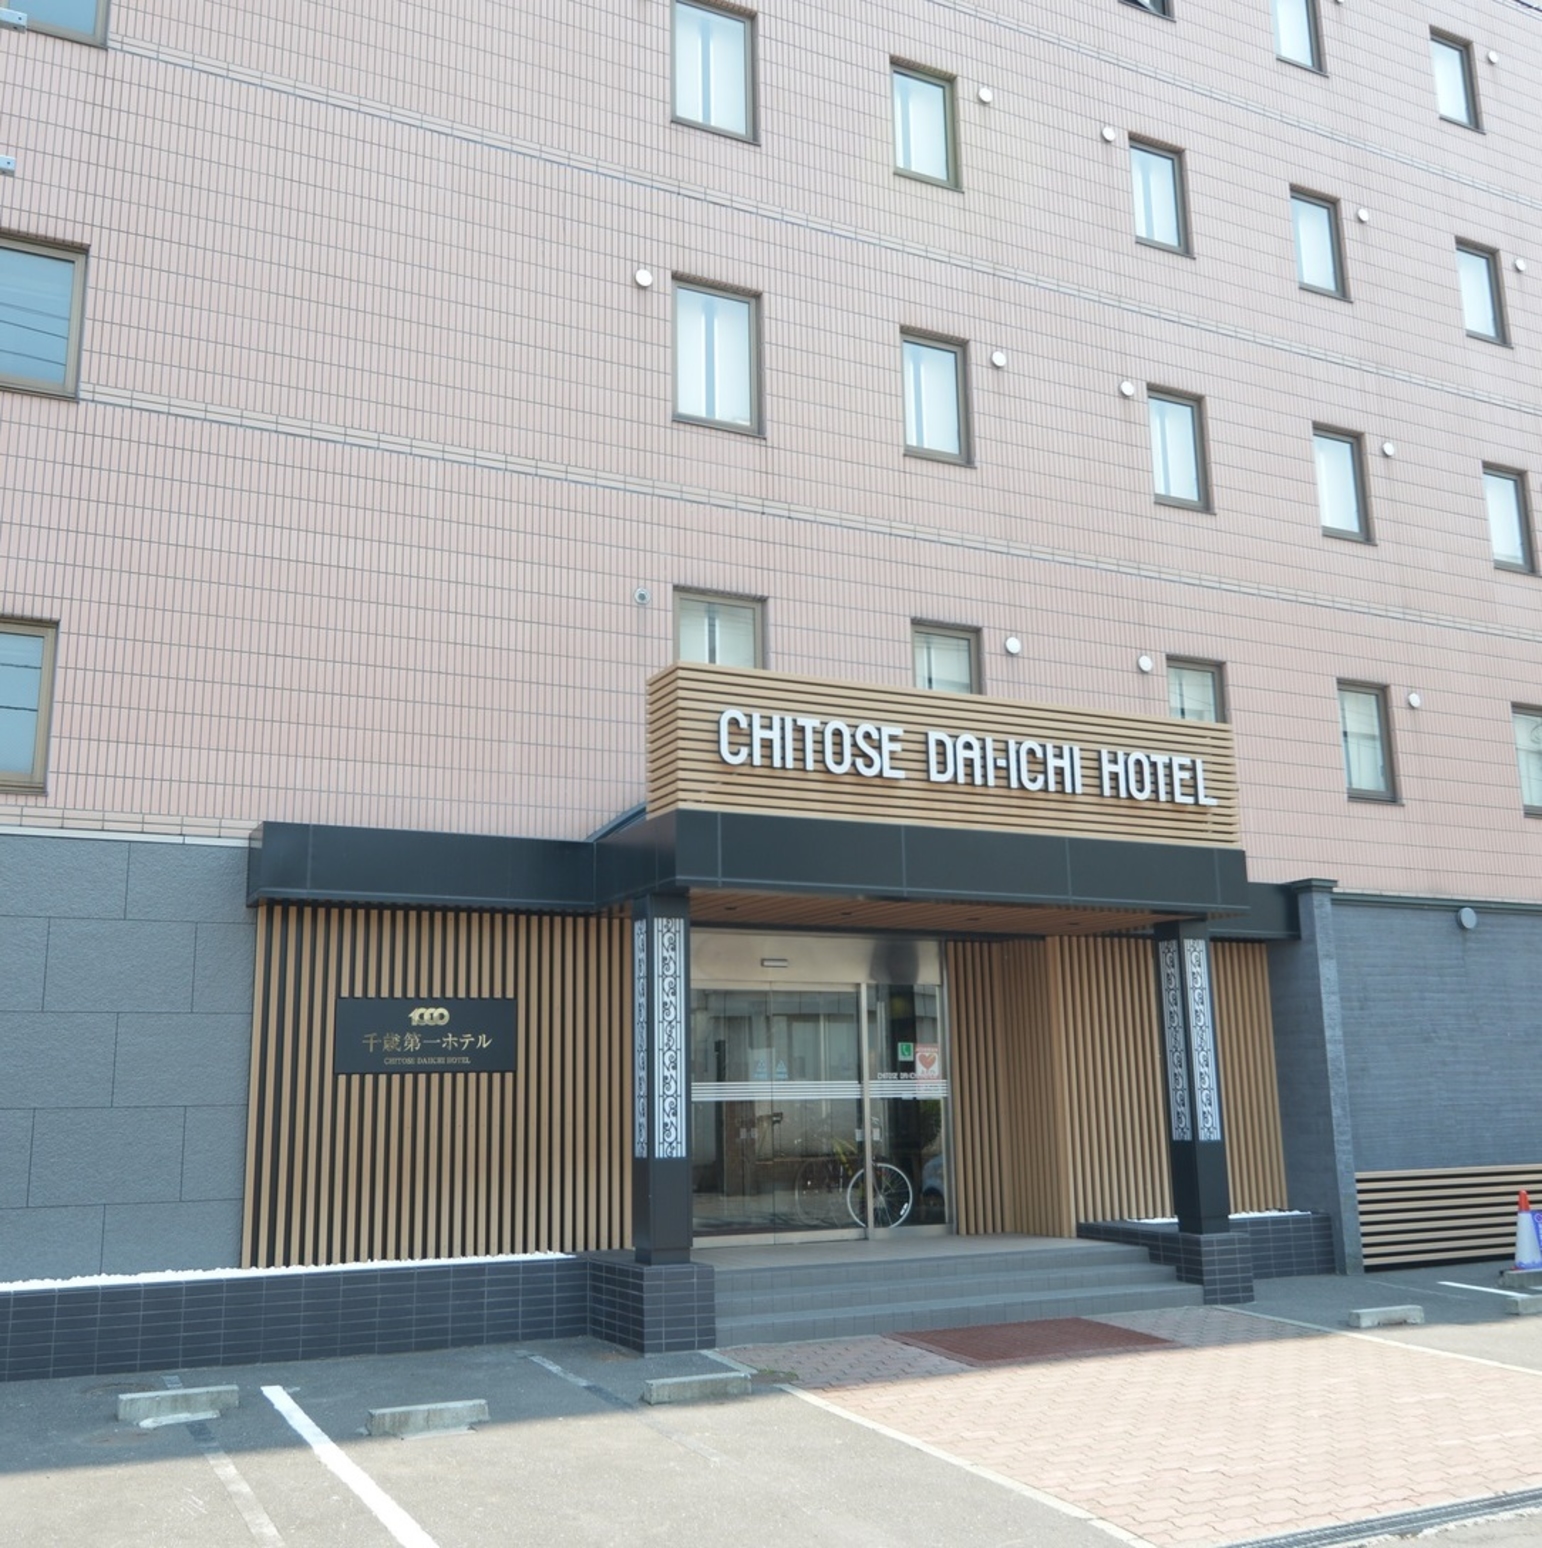 札幌周辺のホテルで空港に近いホテル20選　17位:千歳第一ホテル